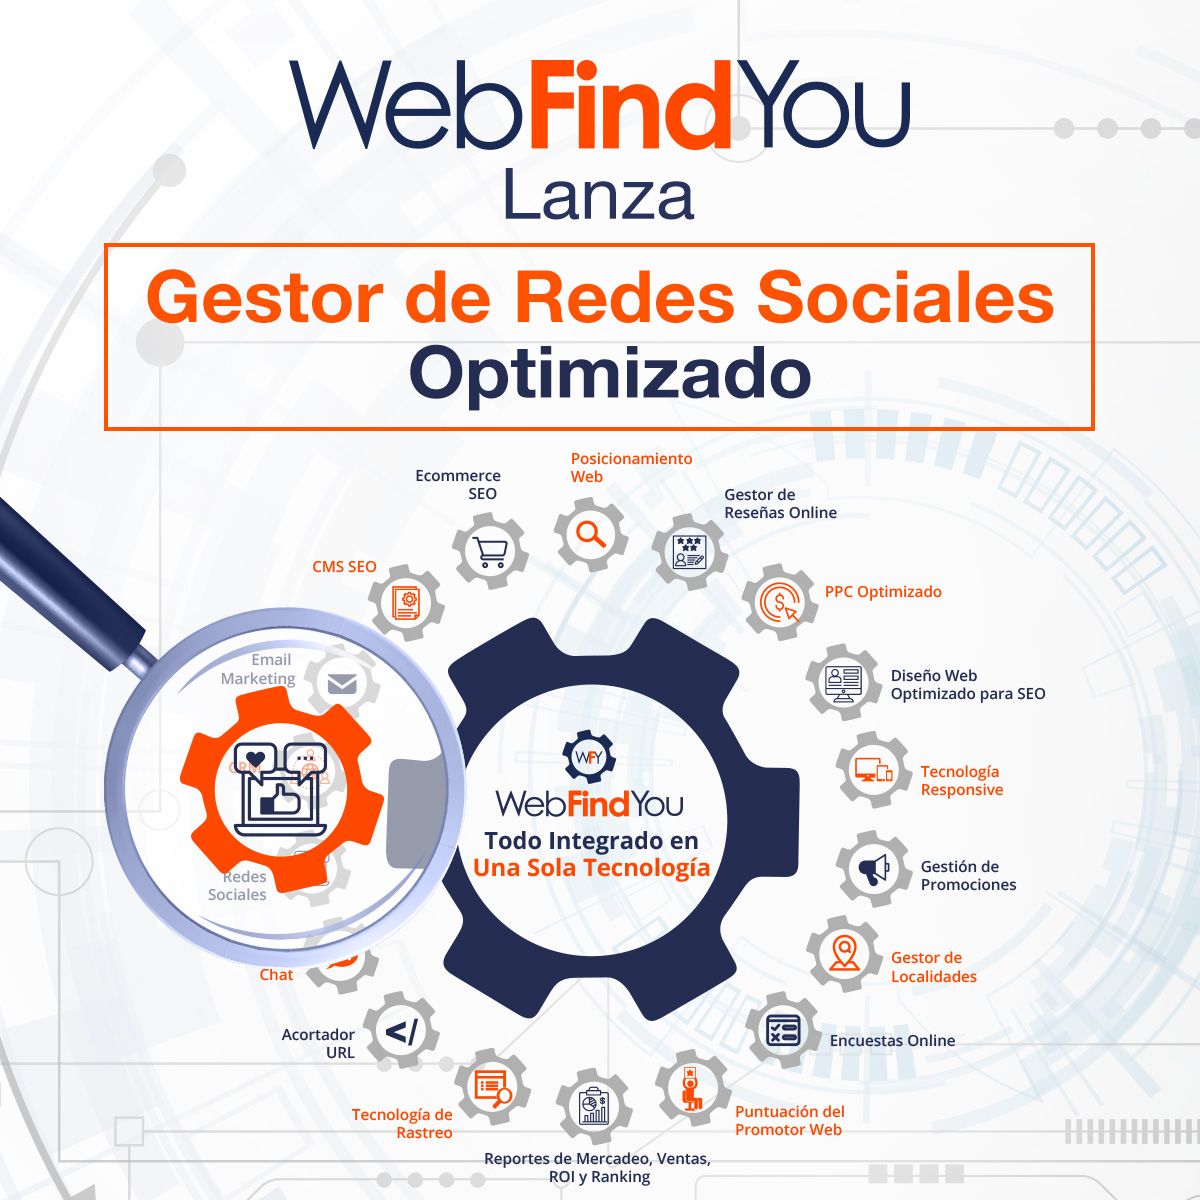 WebFindYou Lanza Gestor de Redes Sociales Optimizado